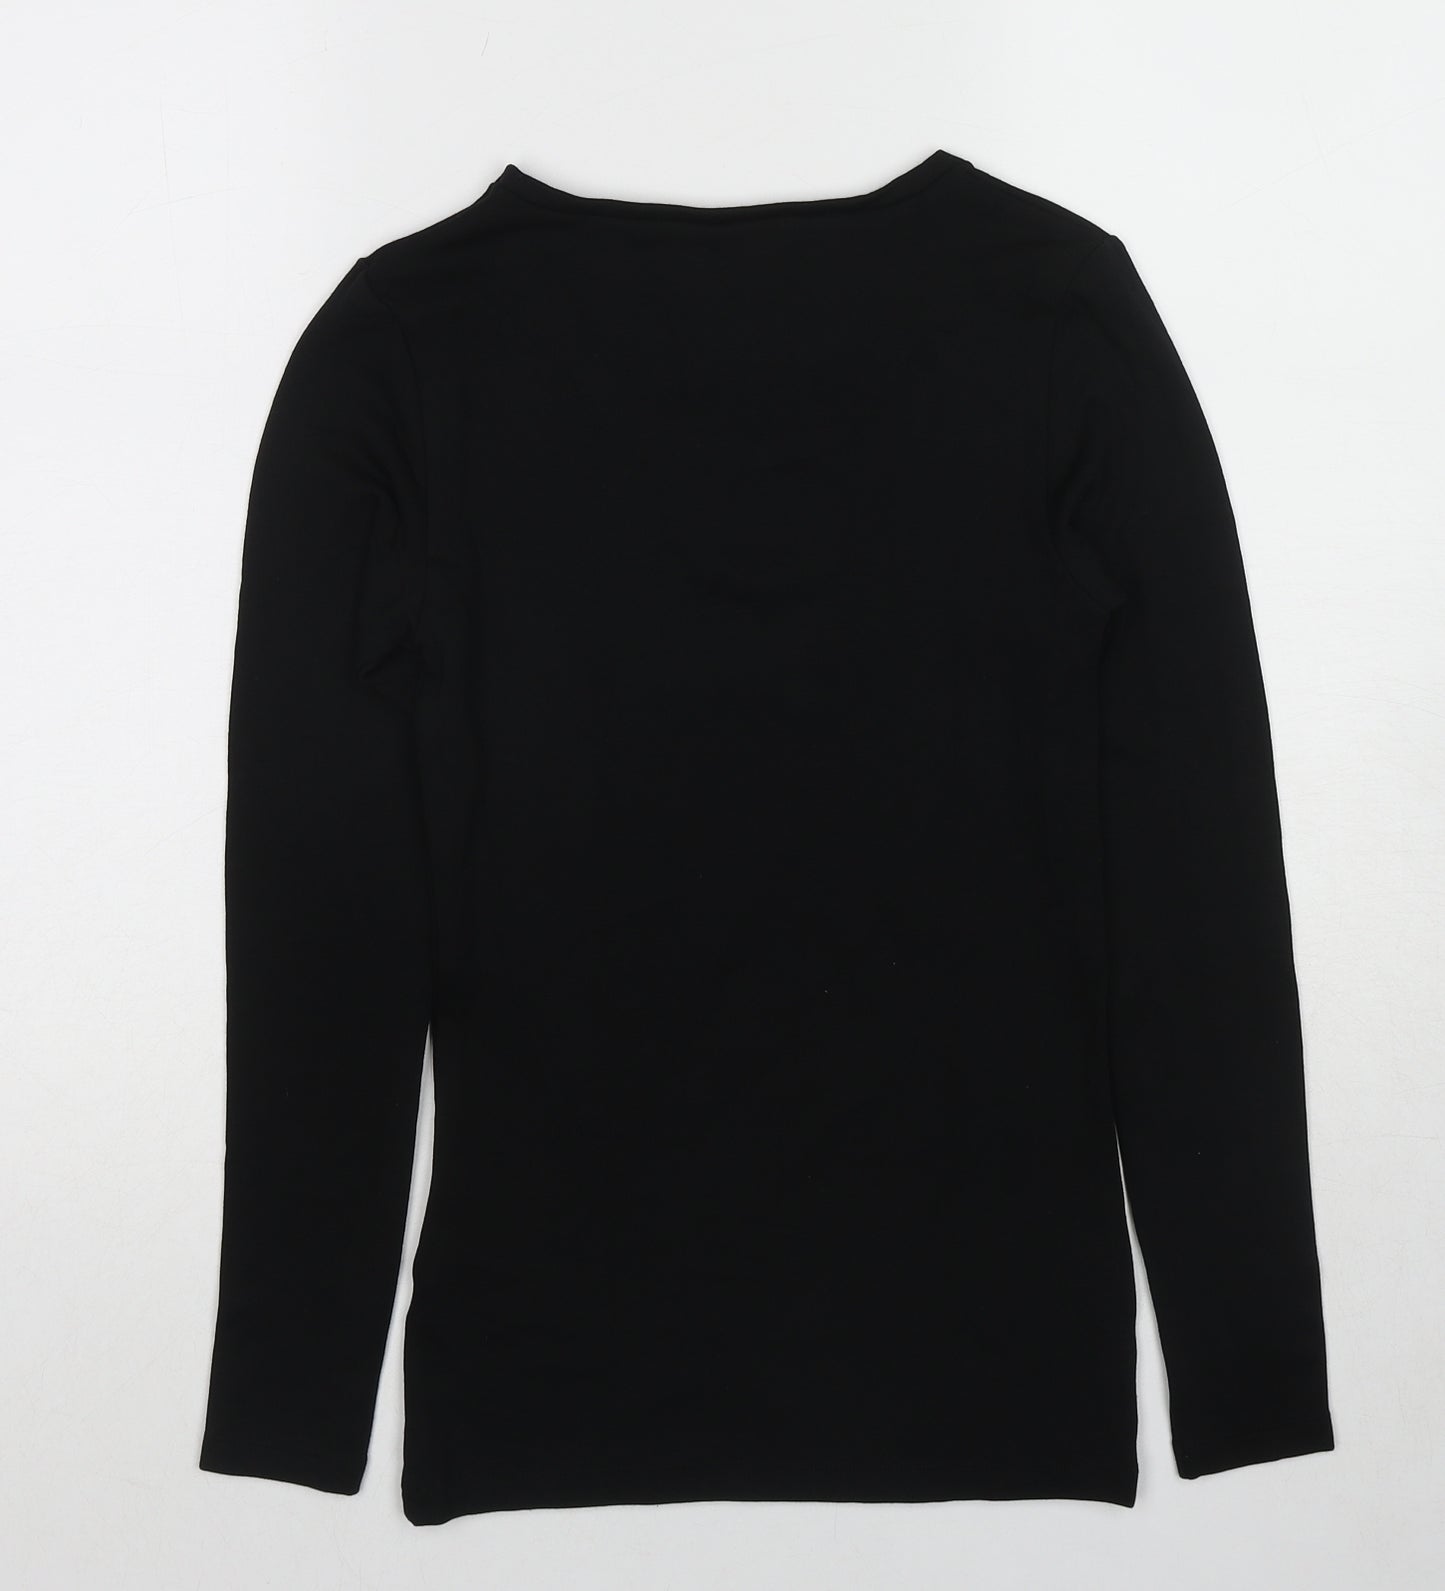 Marks and Spencer Womens Black Acrylic Basic T-Shirt Size 10 Round Neck